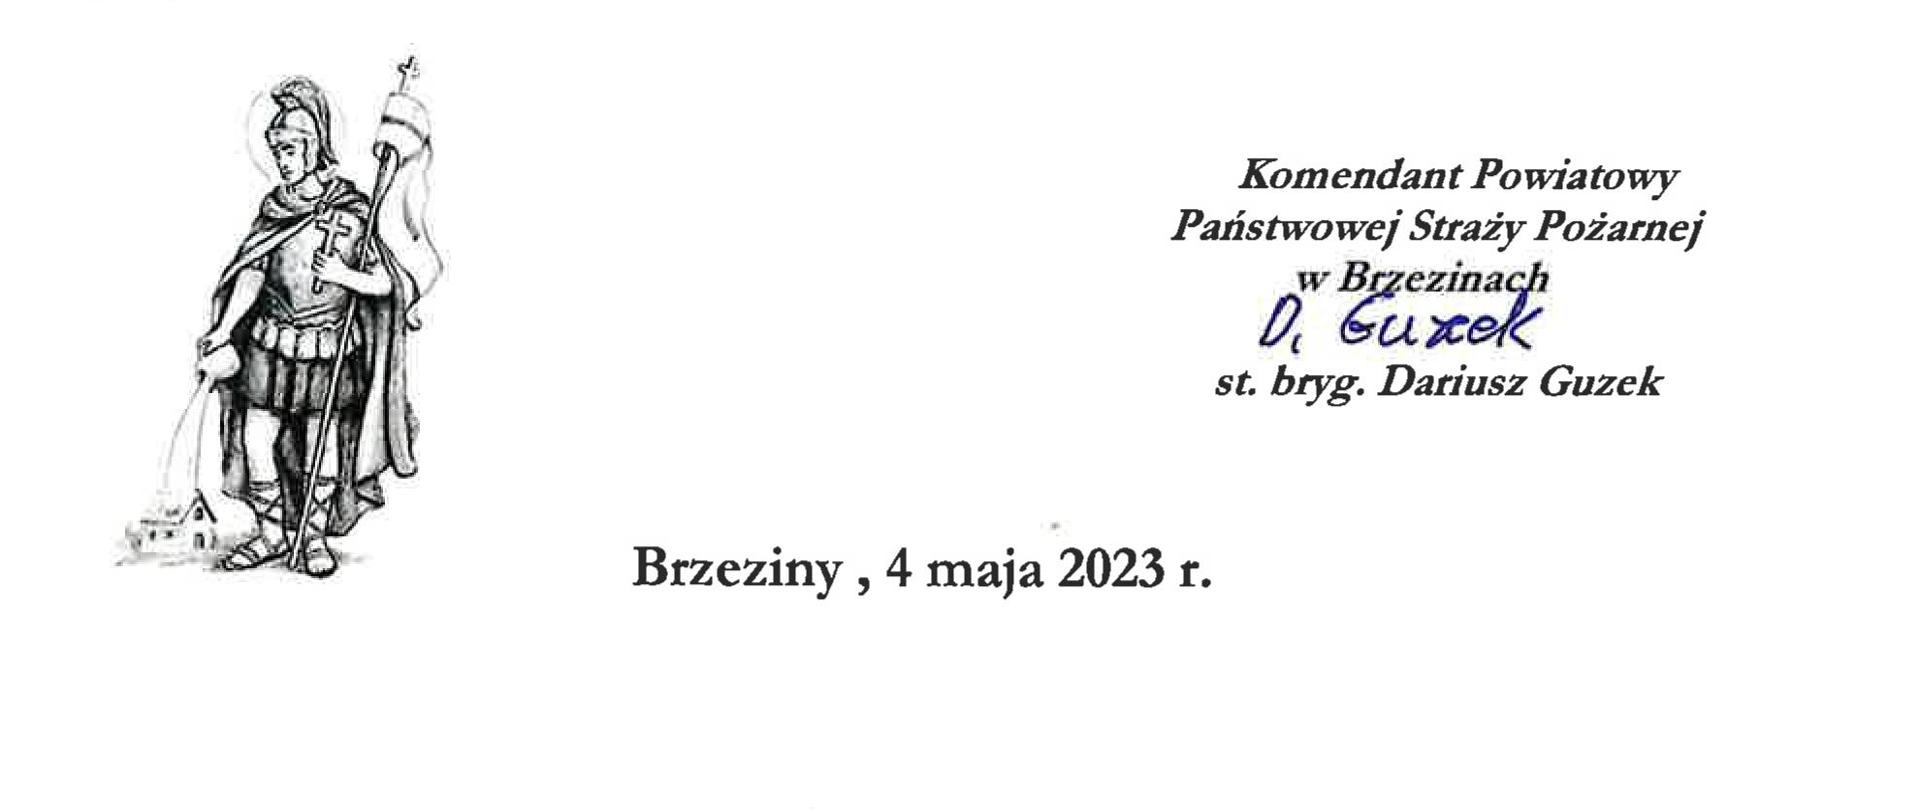 Kartka z życzeniami od komendanta powiatowego PSP w Brzezinach za rok 2023